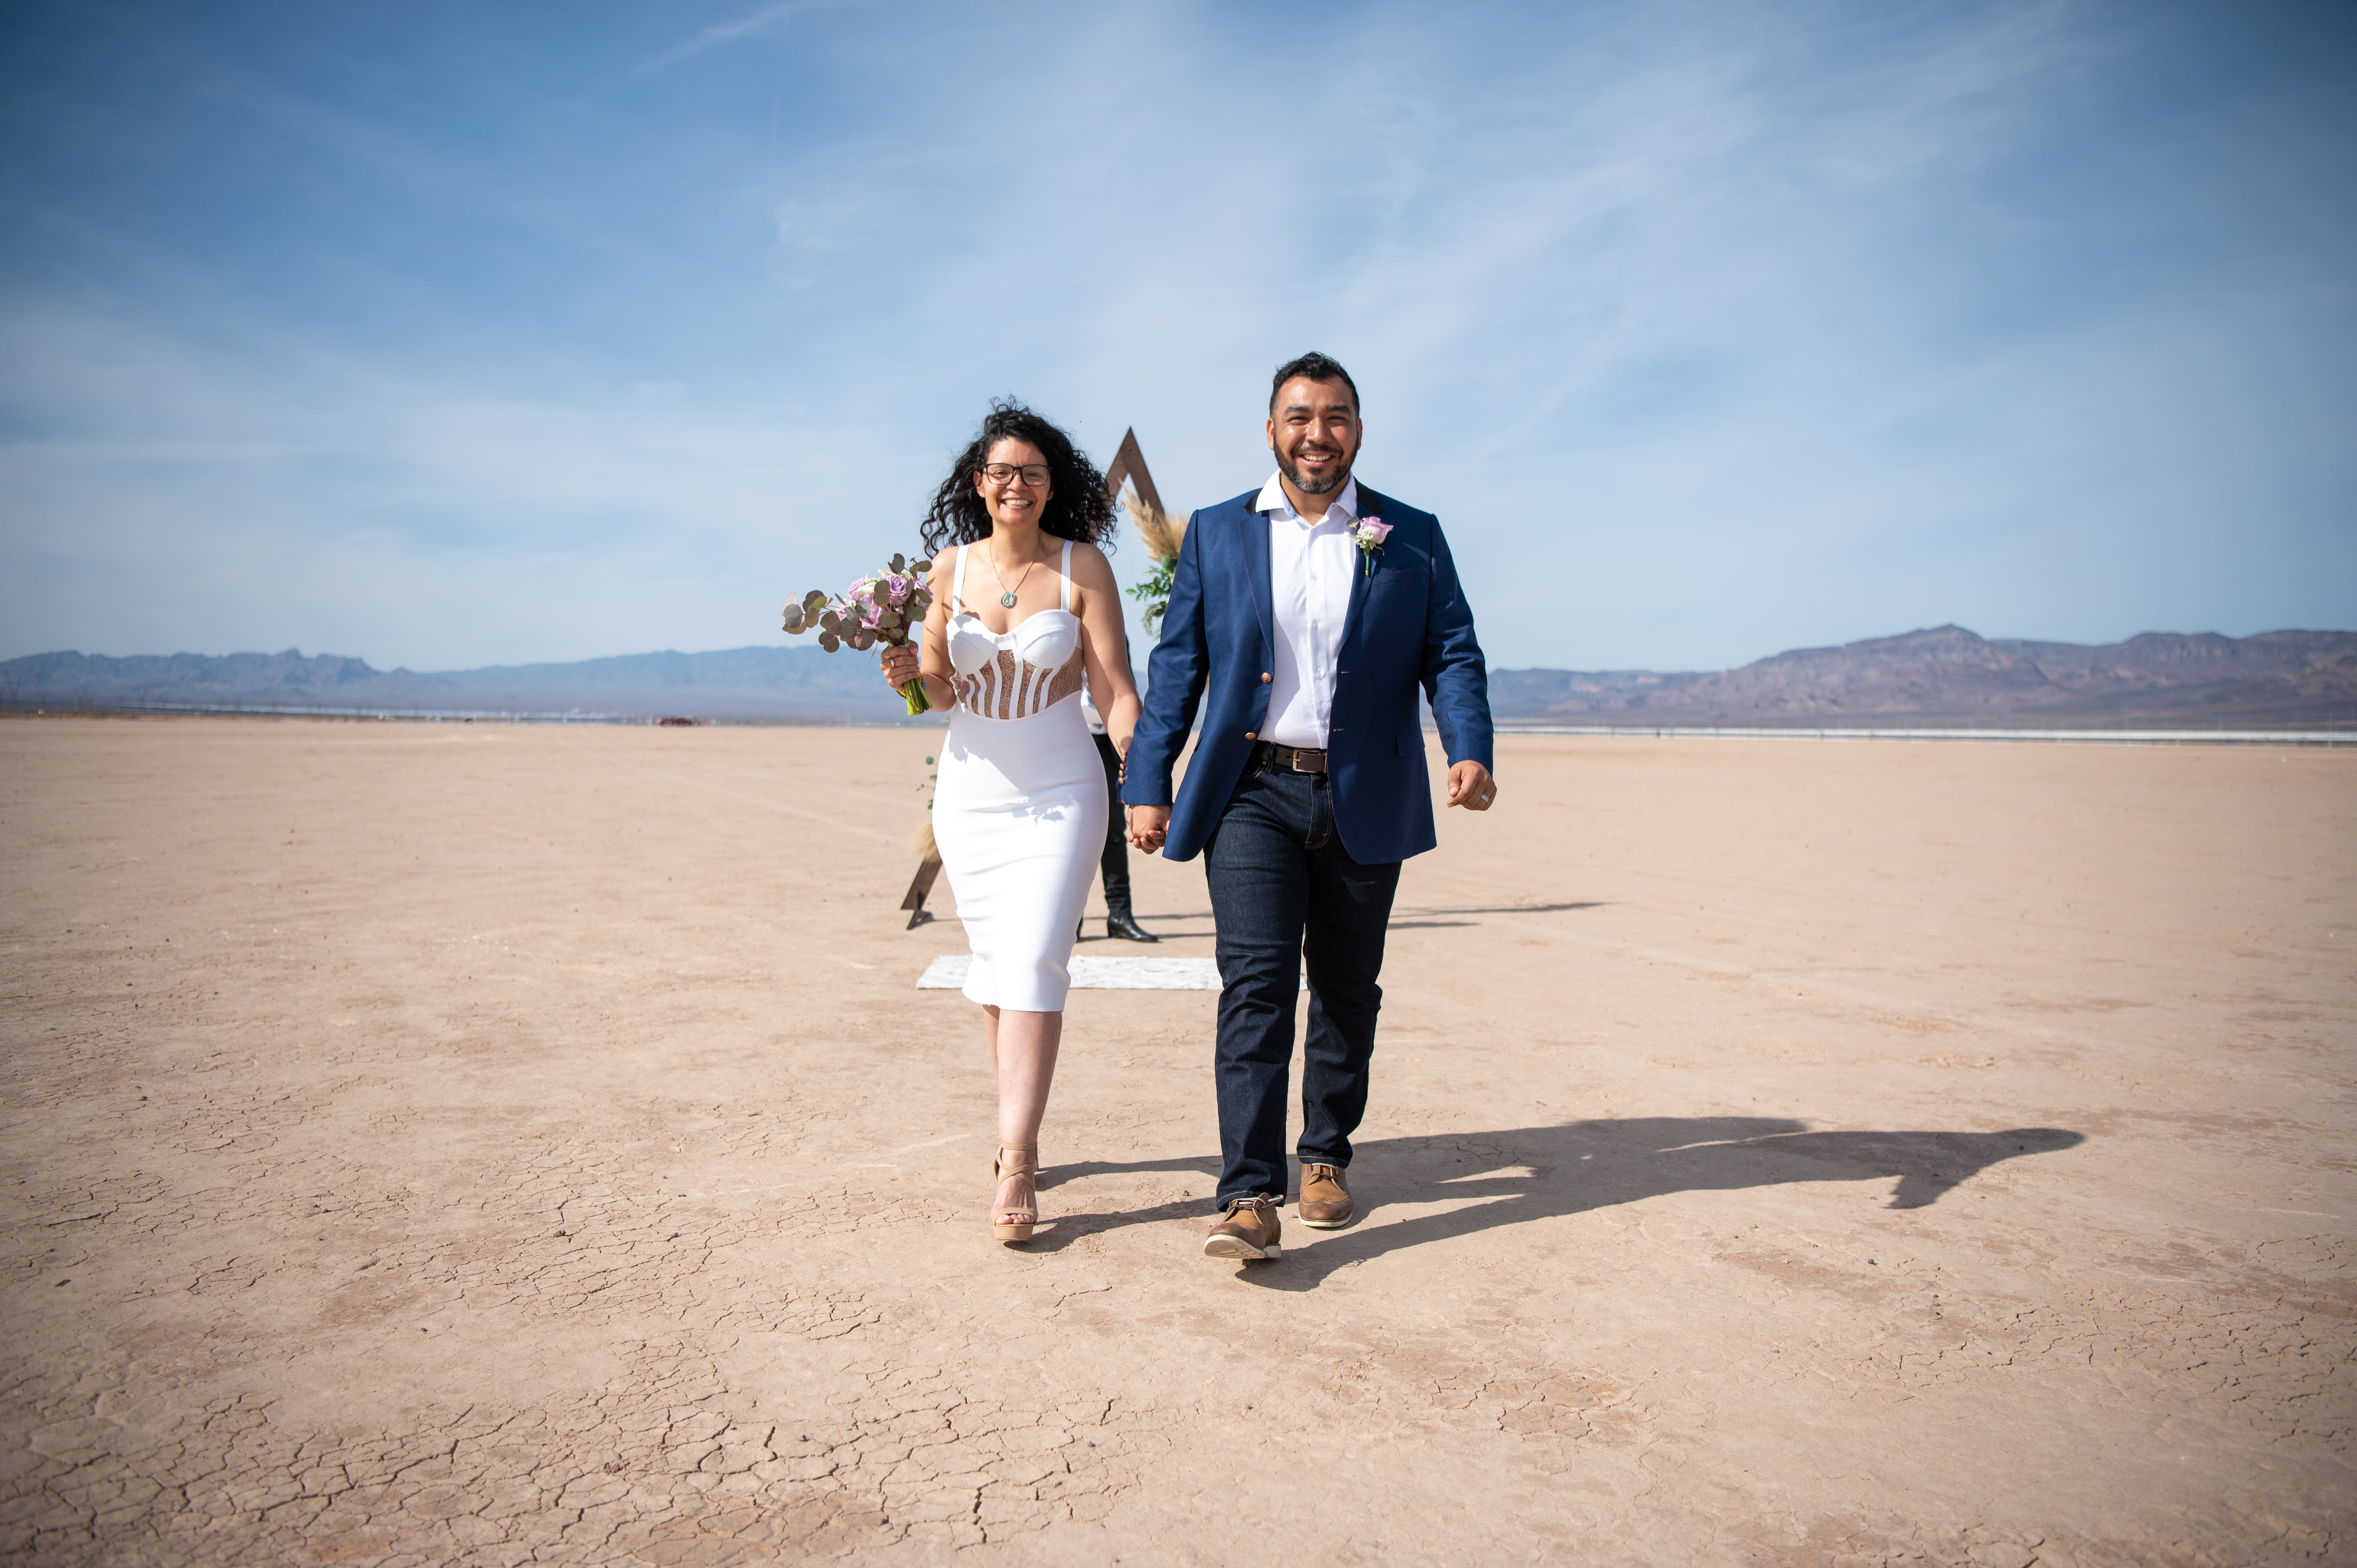 The Little Vegas Wedding Chapel desert elopement package